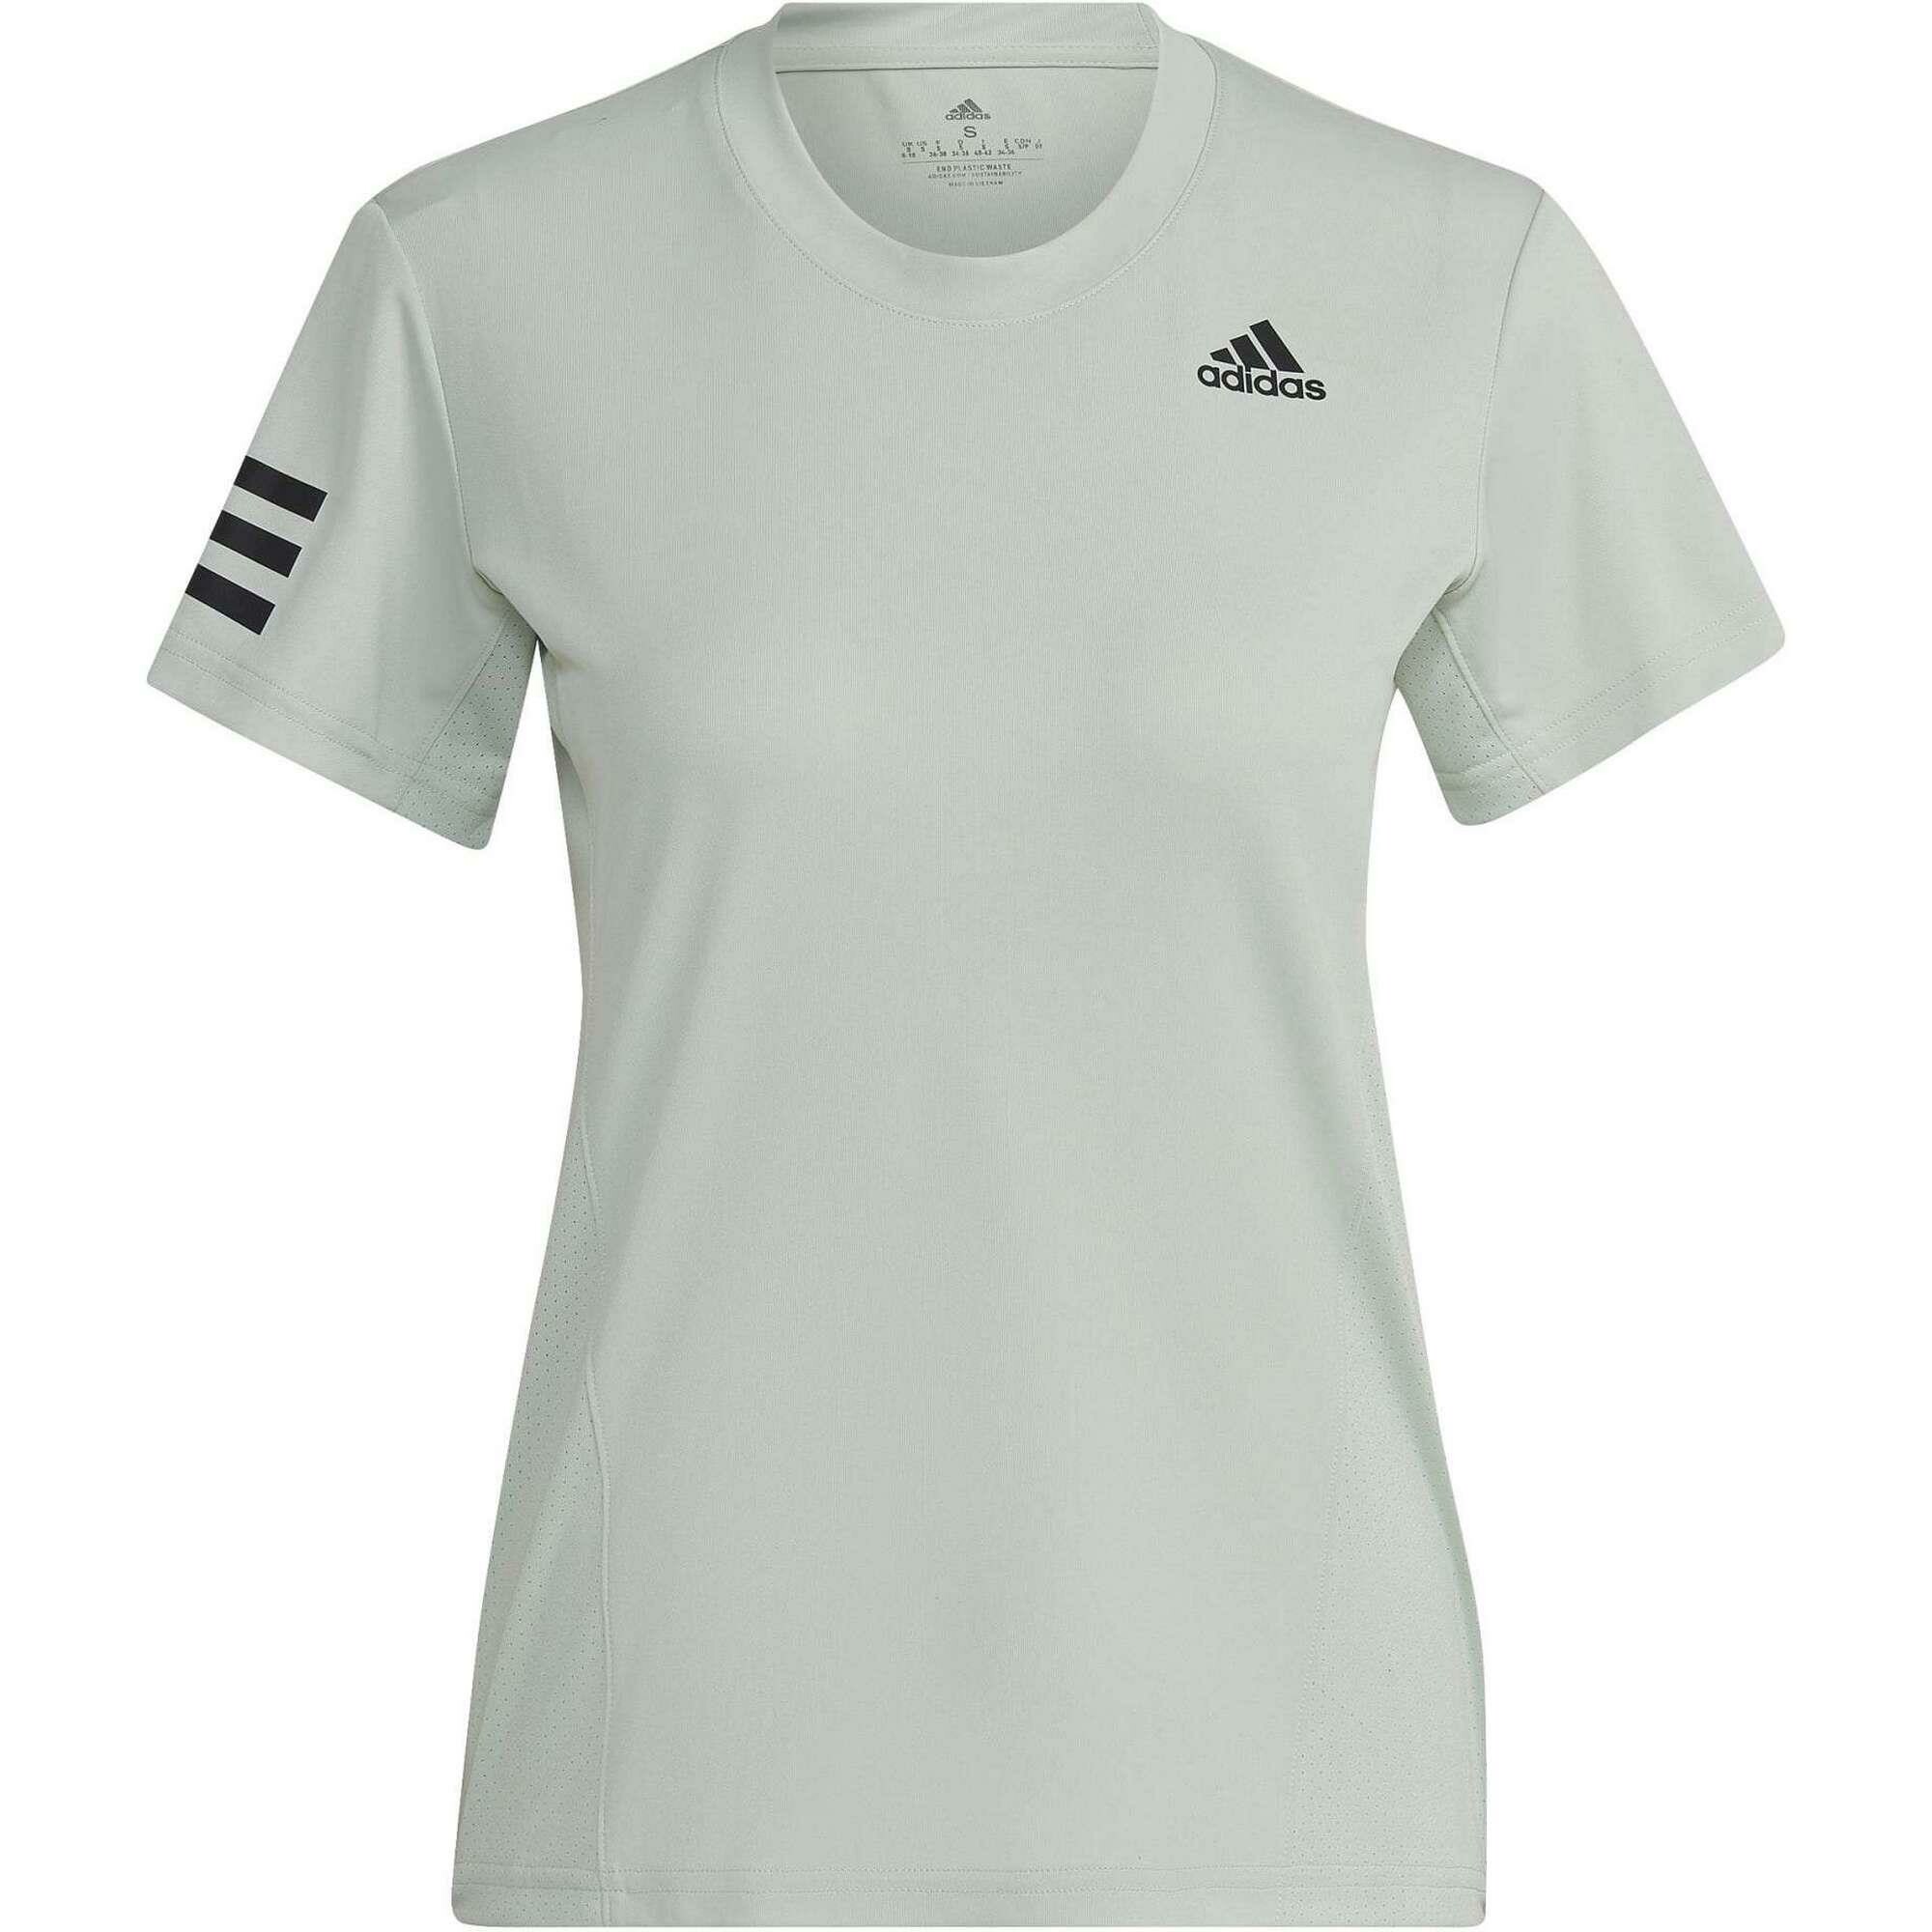 Adidas tennisshirt dames linen green